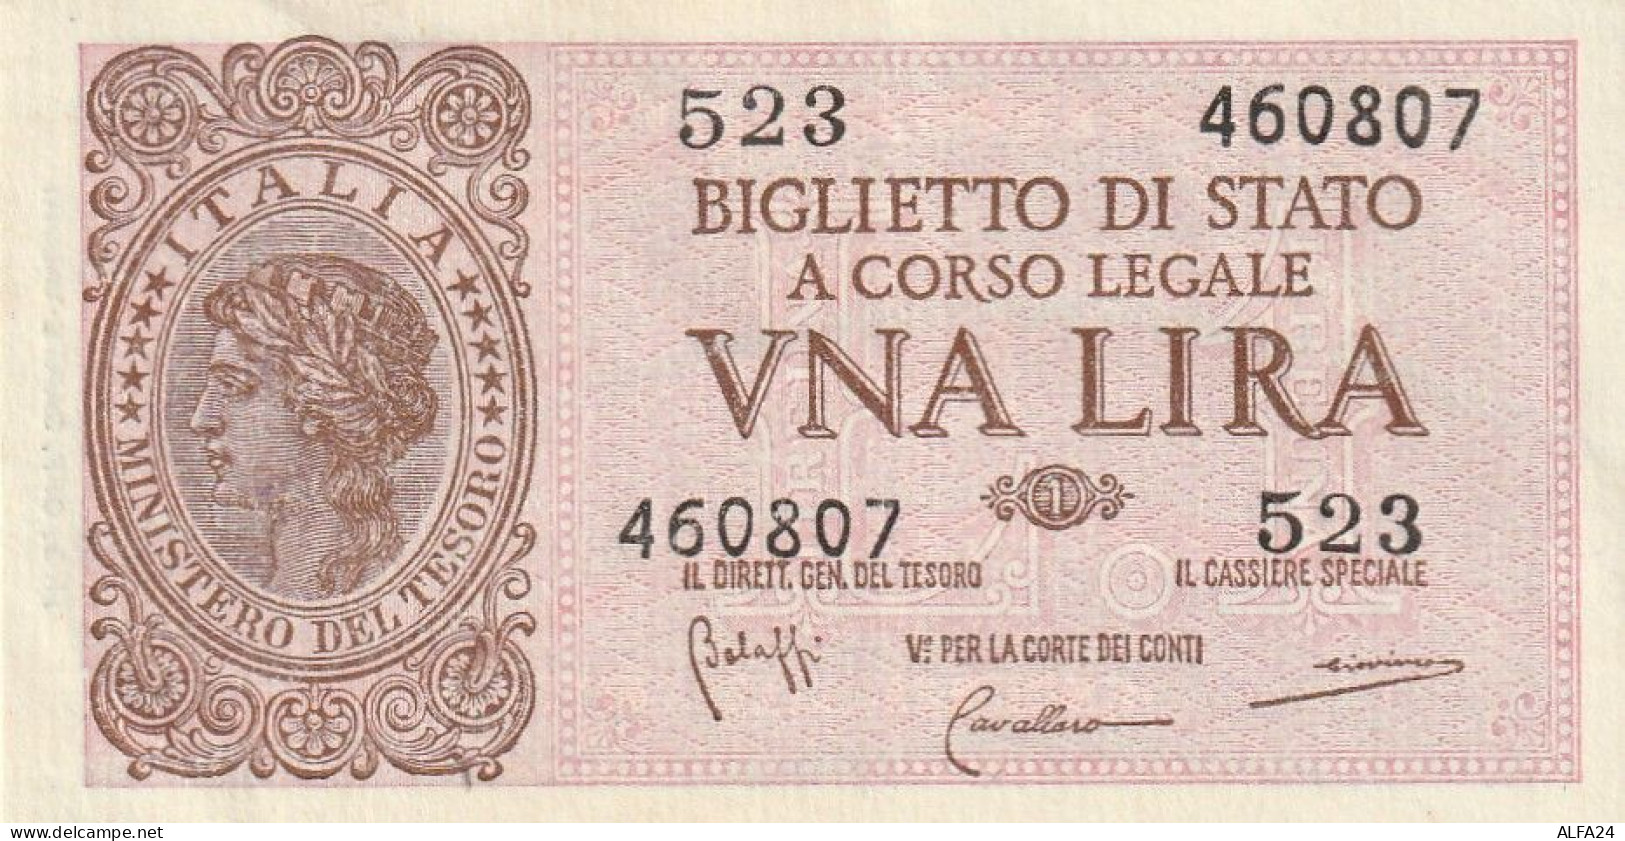 BANCONOTA BIGLIETTO DI STATO ITALIA 1 LIRA EF  (B_367 - Italia – 1 Lira